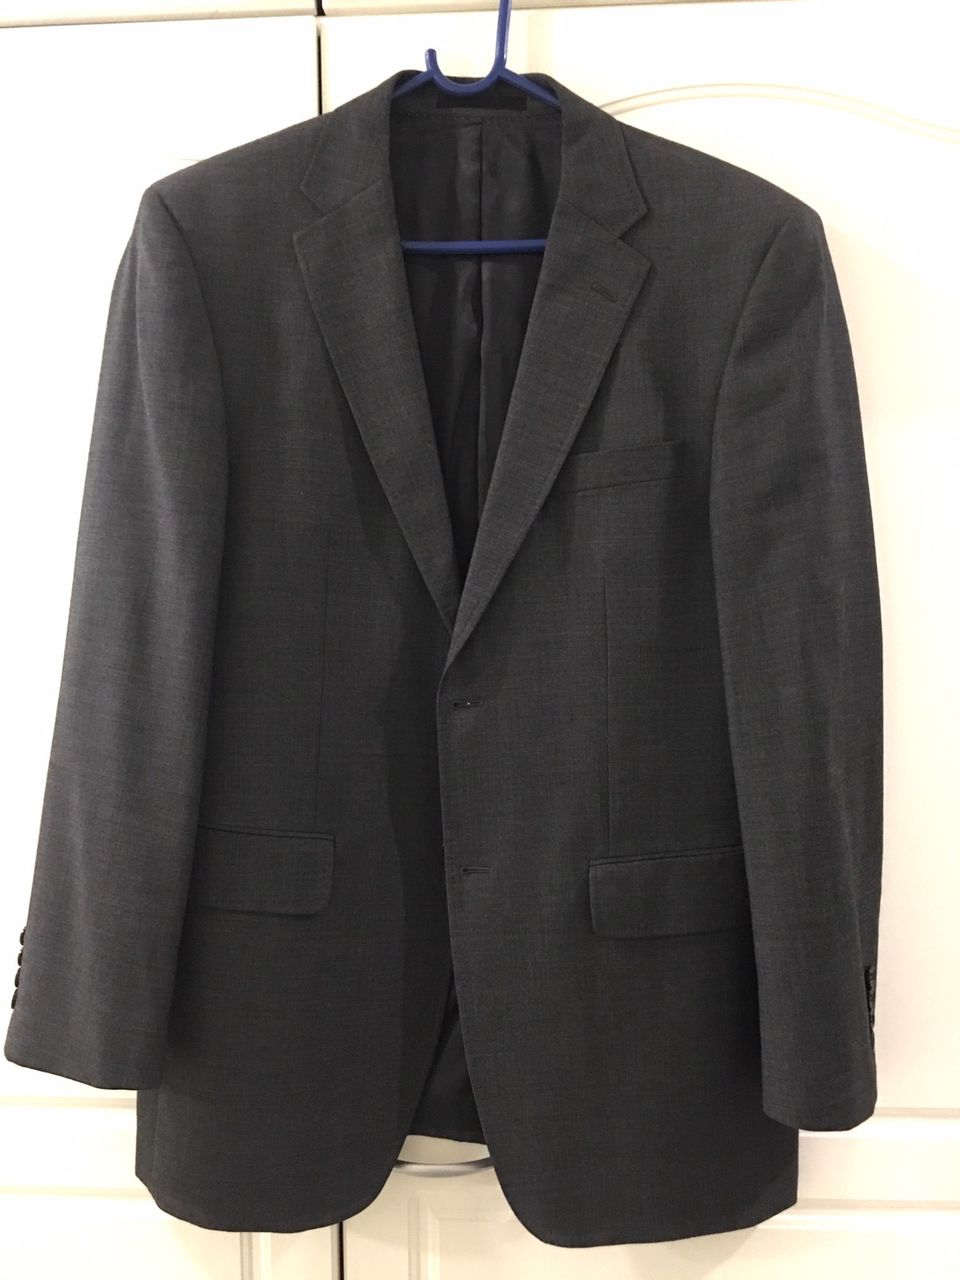 Atlant, miesten harmaa bleiseri / pikkutakki / puvun takki, 100% villaa, 52